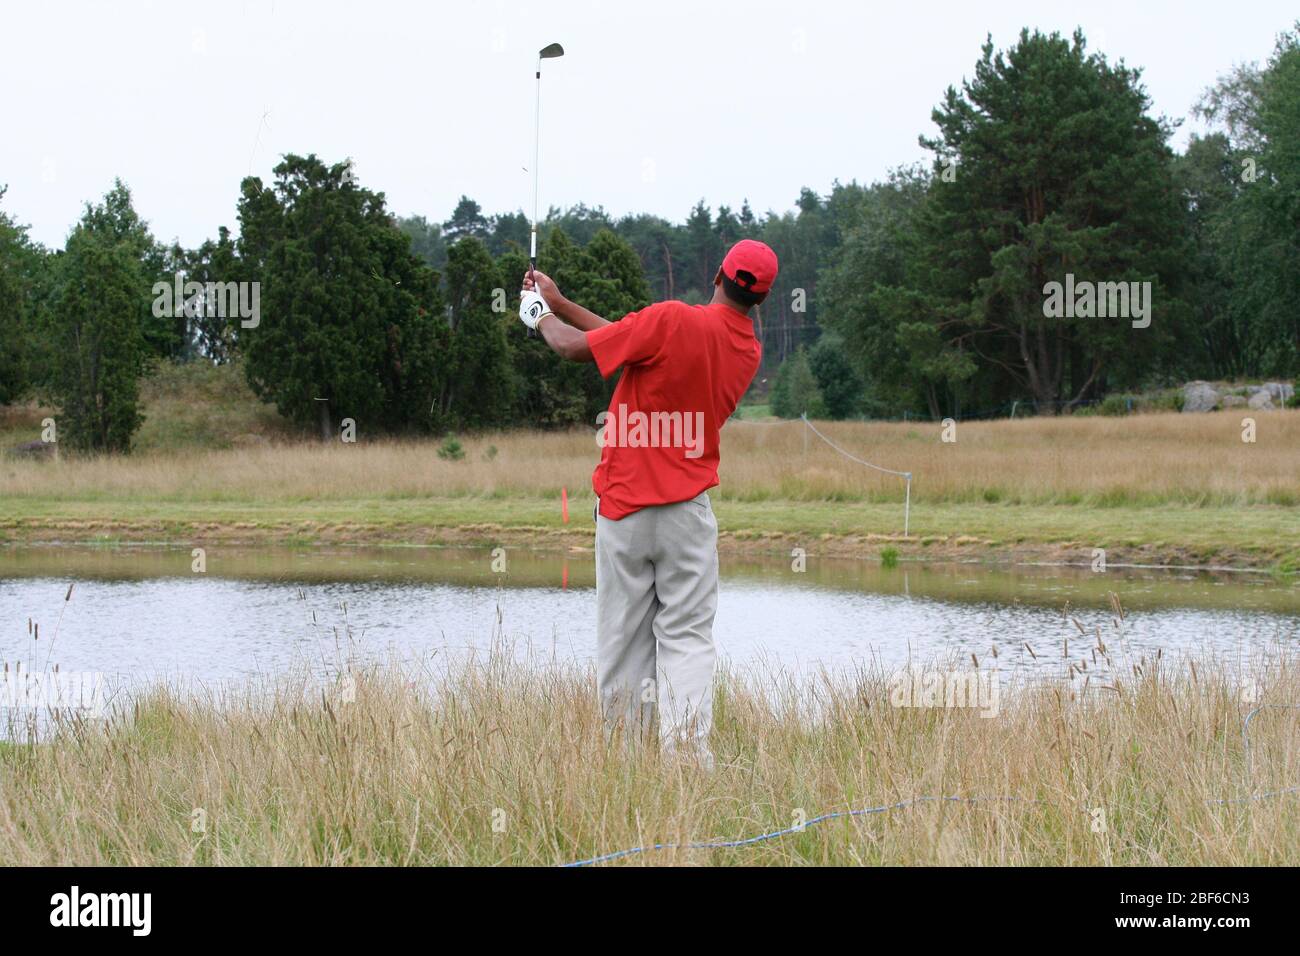 Tony Finau en difficulté. Stockholm / Suède, Arlangastad, parcours de golf, août 2007. Banque D'Images